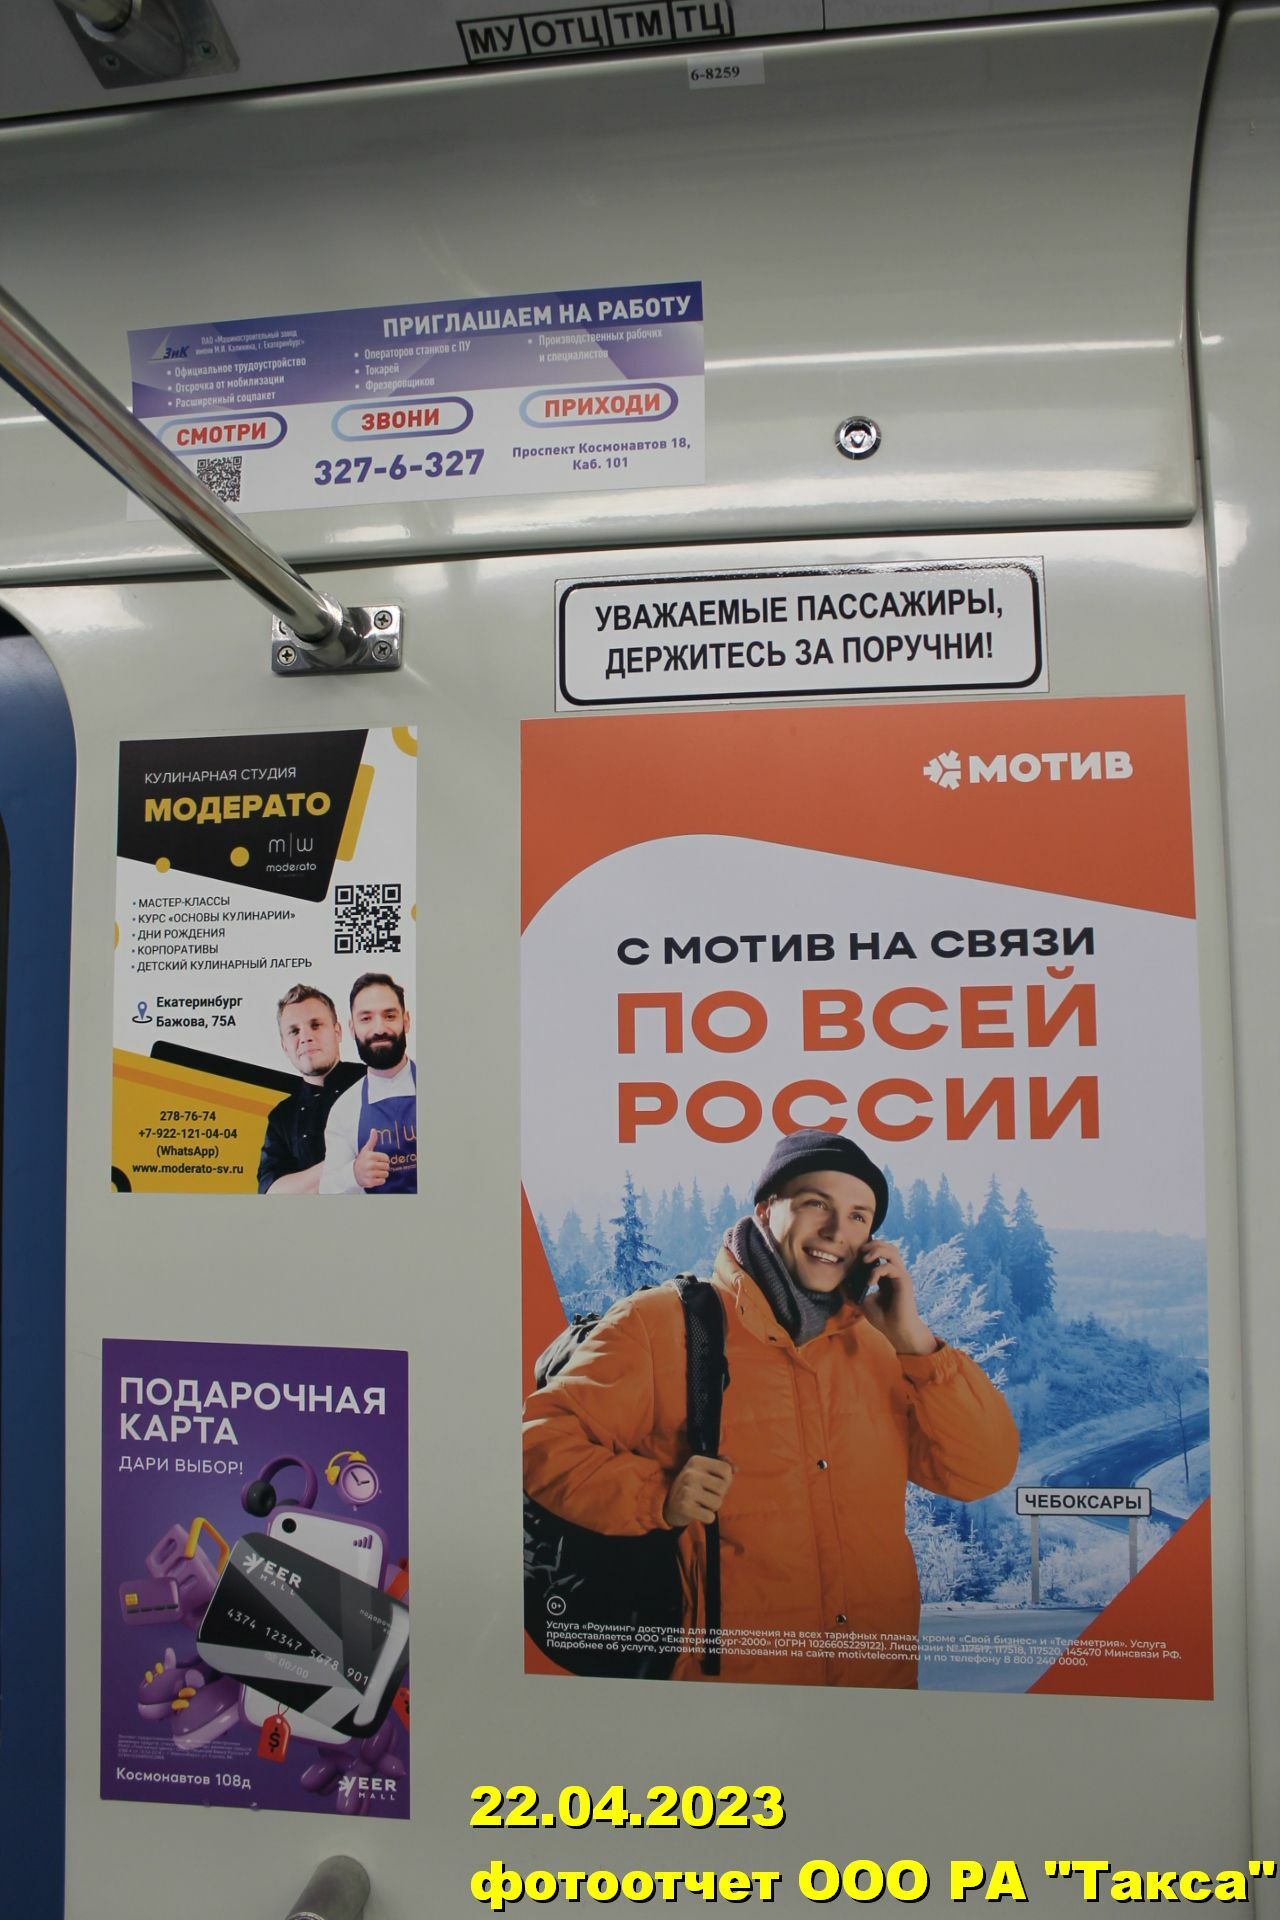 Изготовление и размещение всех видов рекламы в метро в Екатеринбурге от рекламного агентства «Такса».